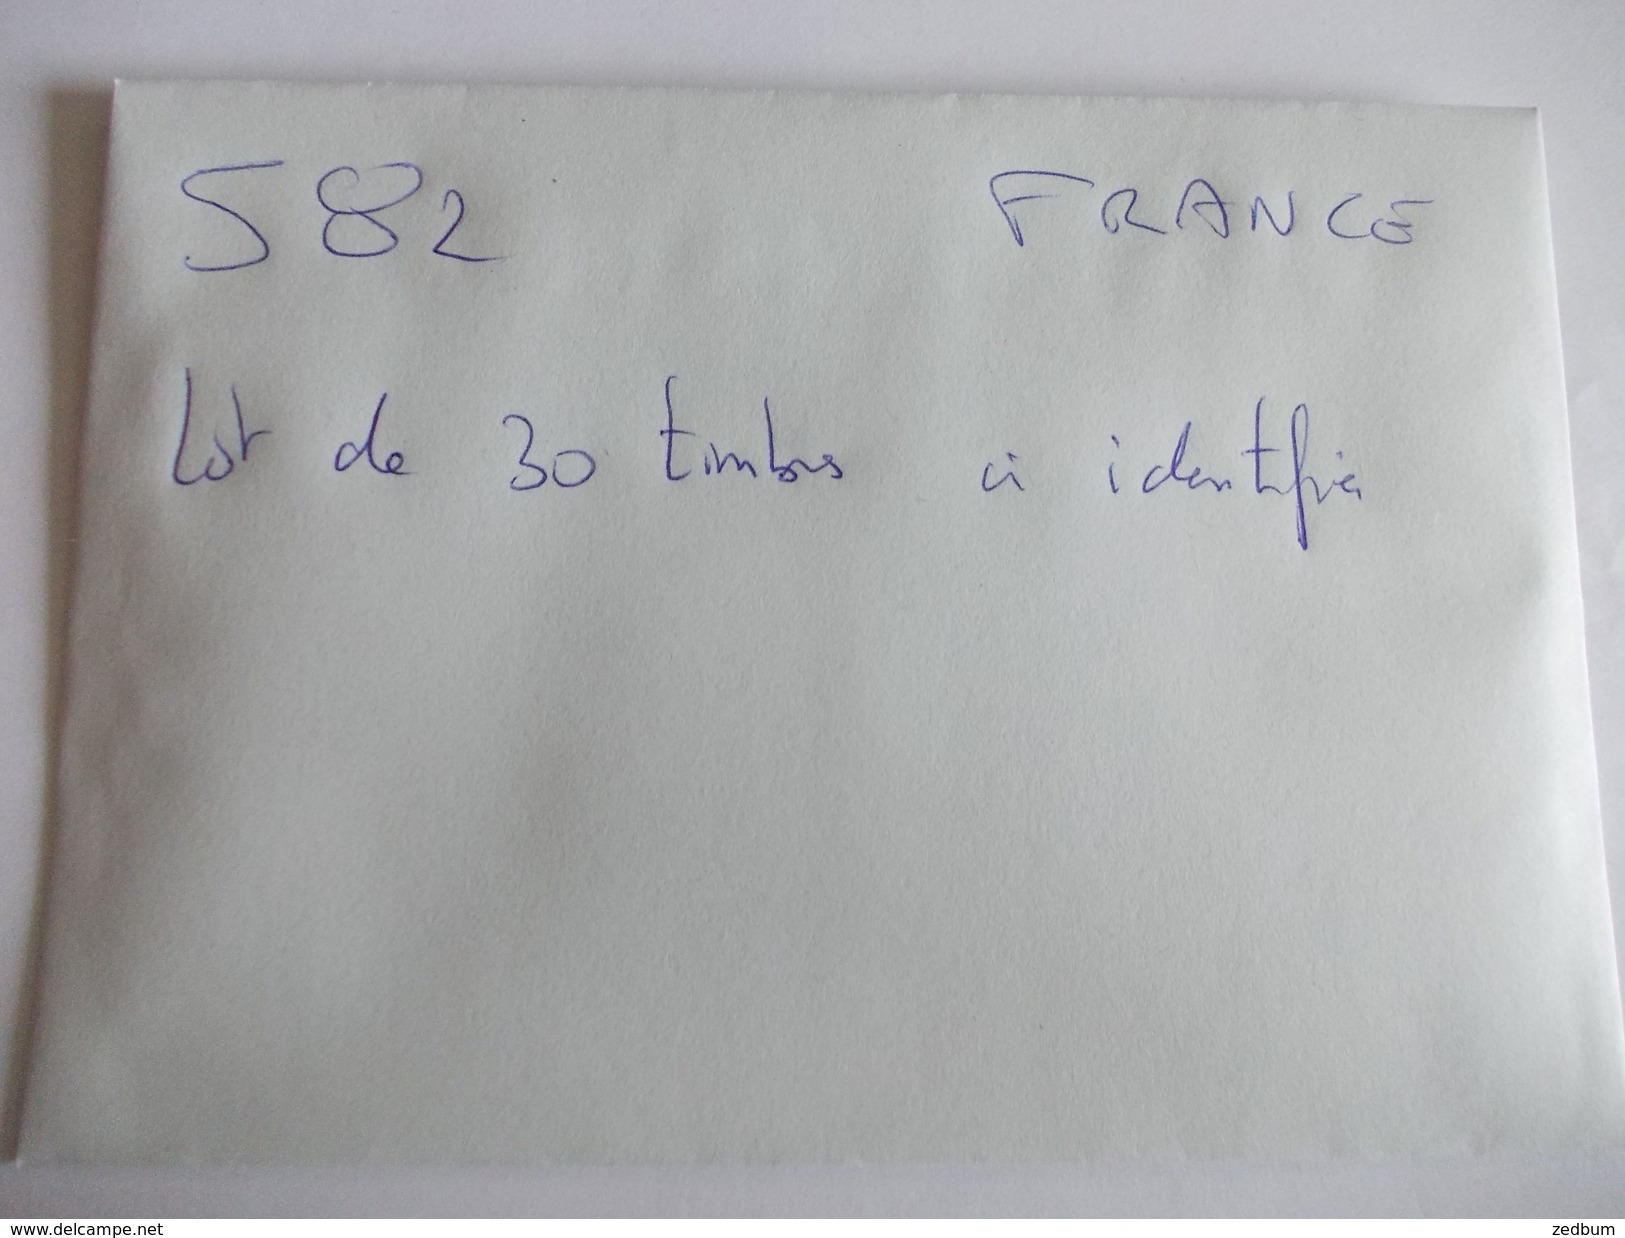 TIMBRE France Lot De 30 Timbres à Identifier N° 582 - Alla Rinfusa (max 999 Francobolli)